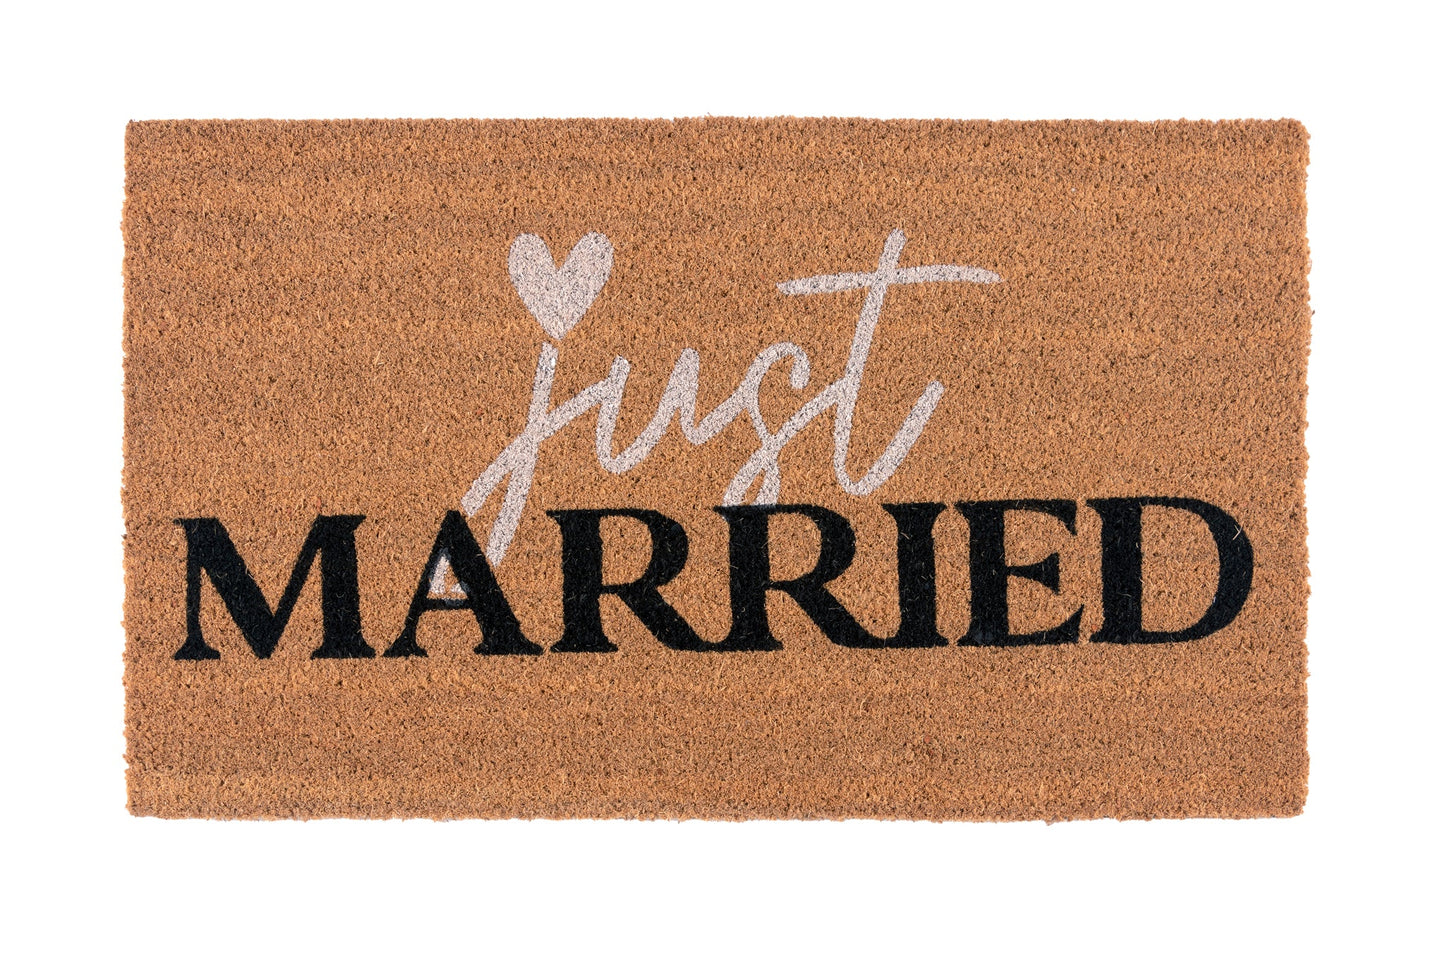 Shiraleah "Just Married" Doormat, Natural by Shiraleah